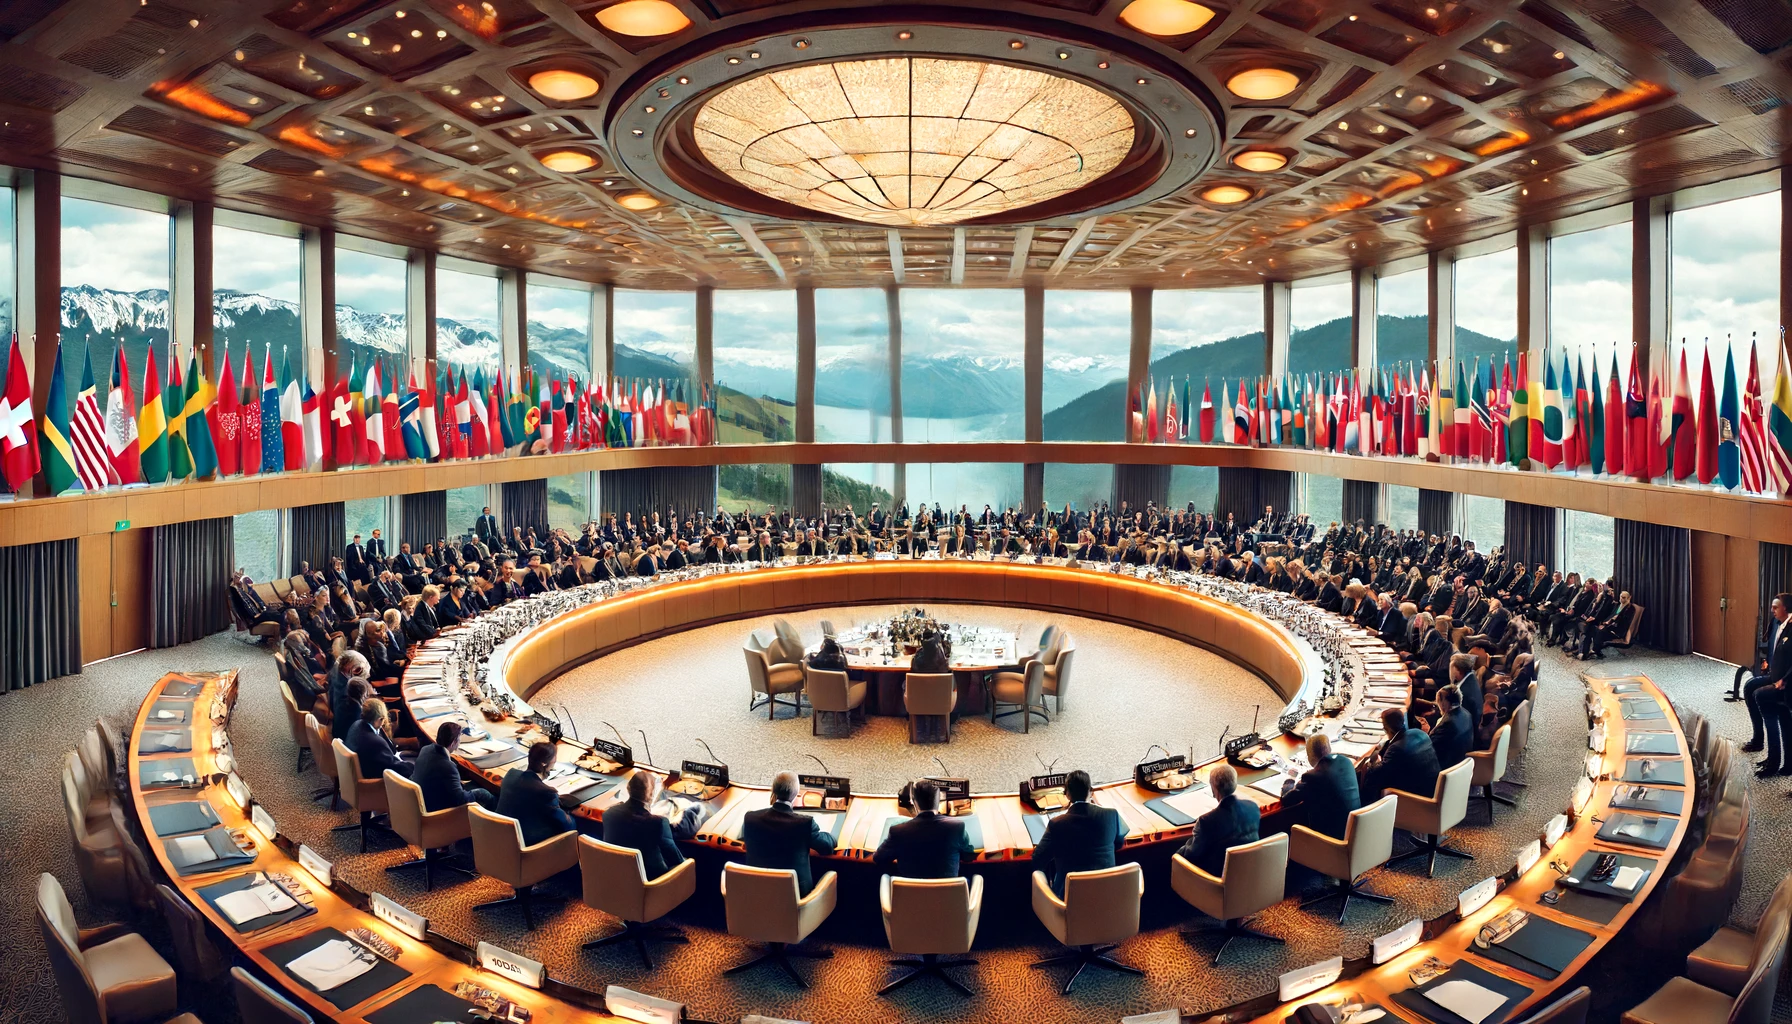 Eskalacja Napięć na Konferencji w Szwajcarii: Kryzysowe Wymagania i Ostre Reakcje